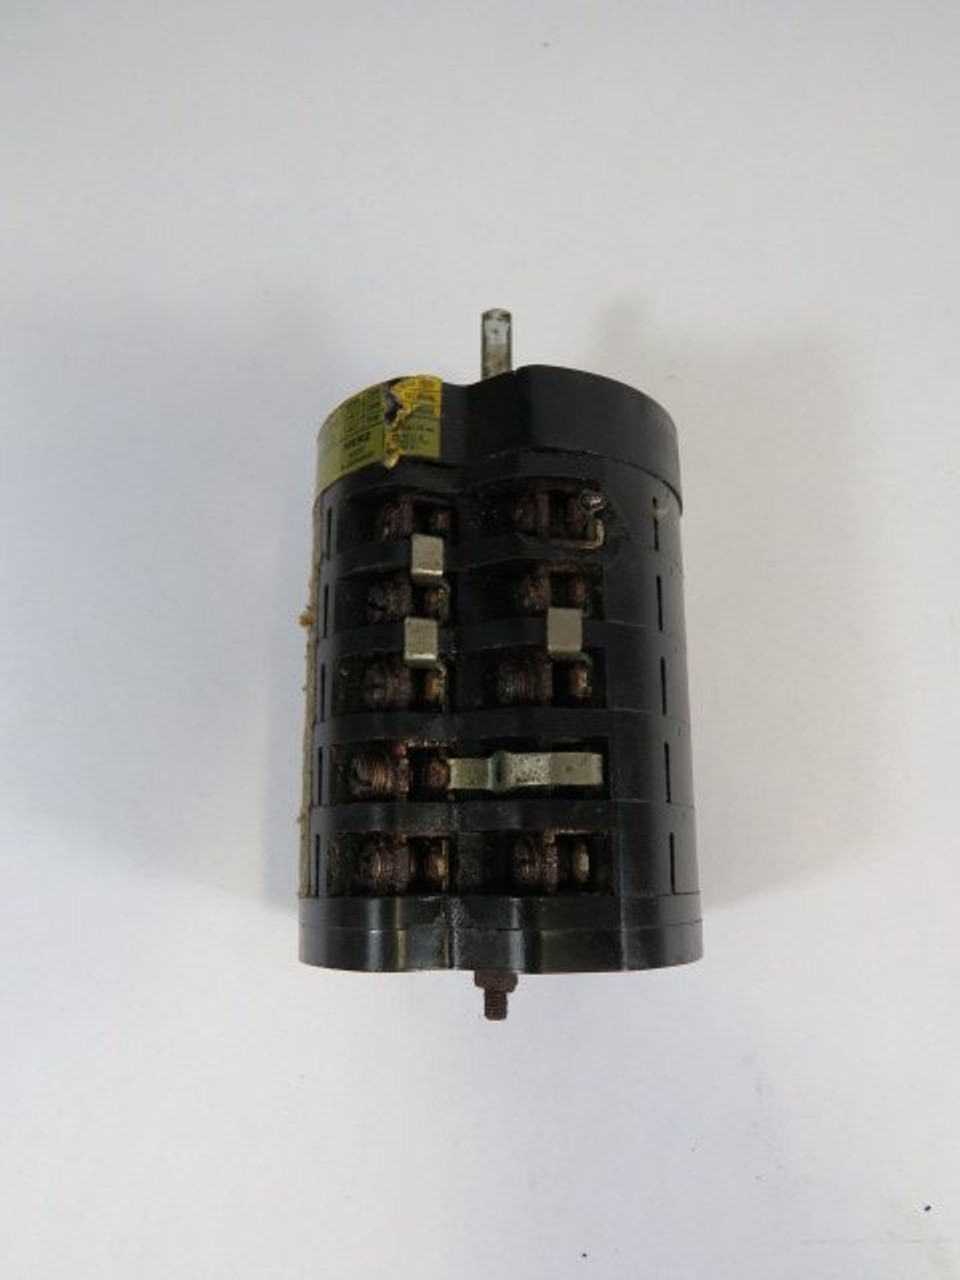 Merz TYP-656 Rotary Switch Control USED